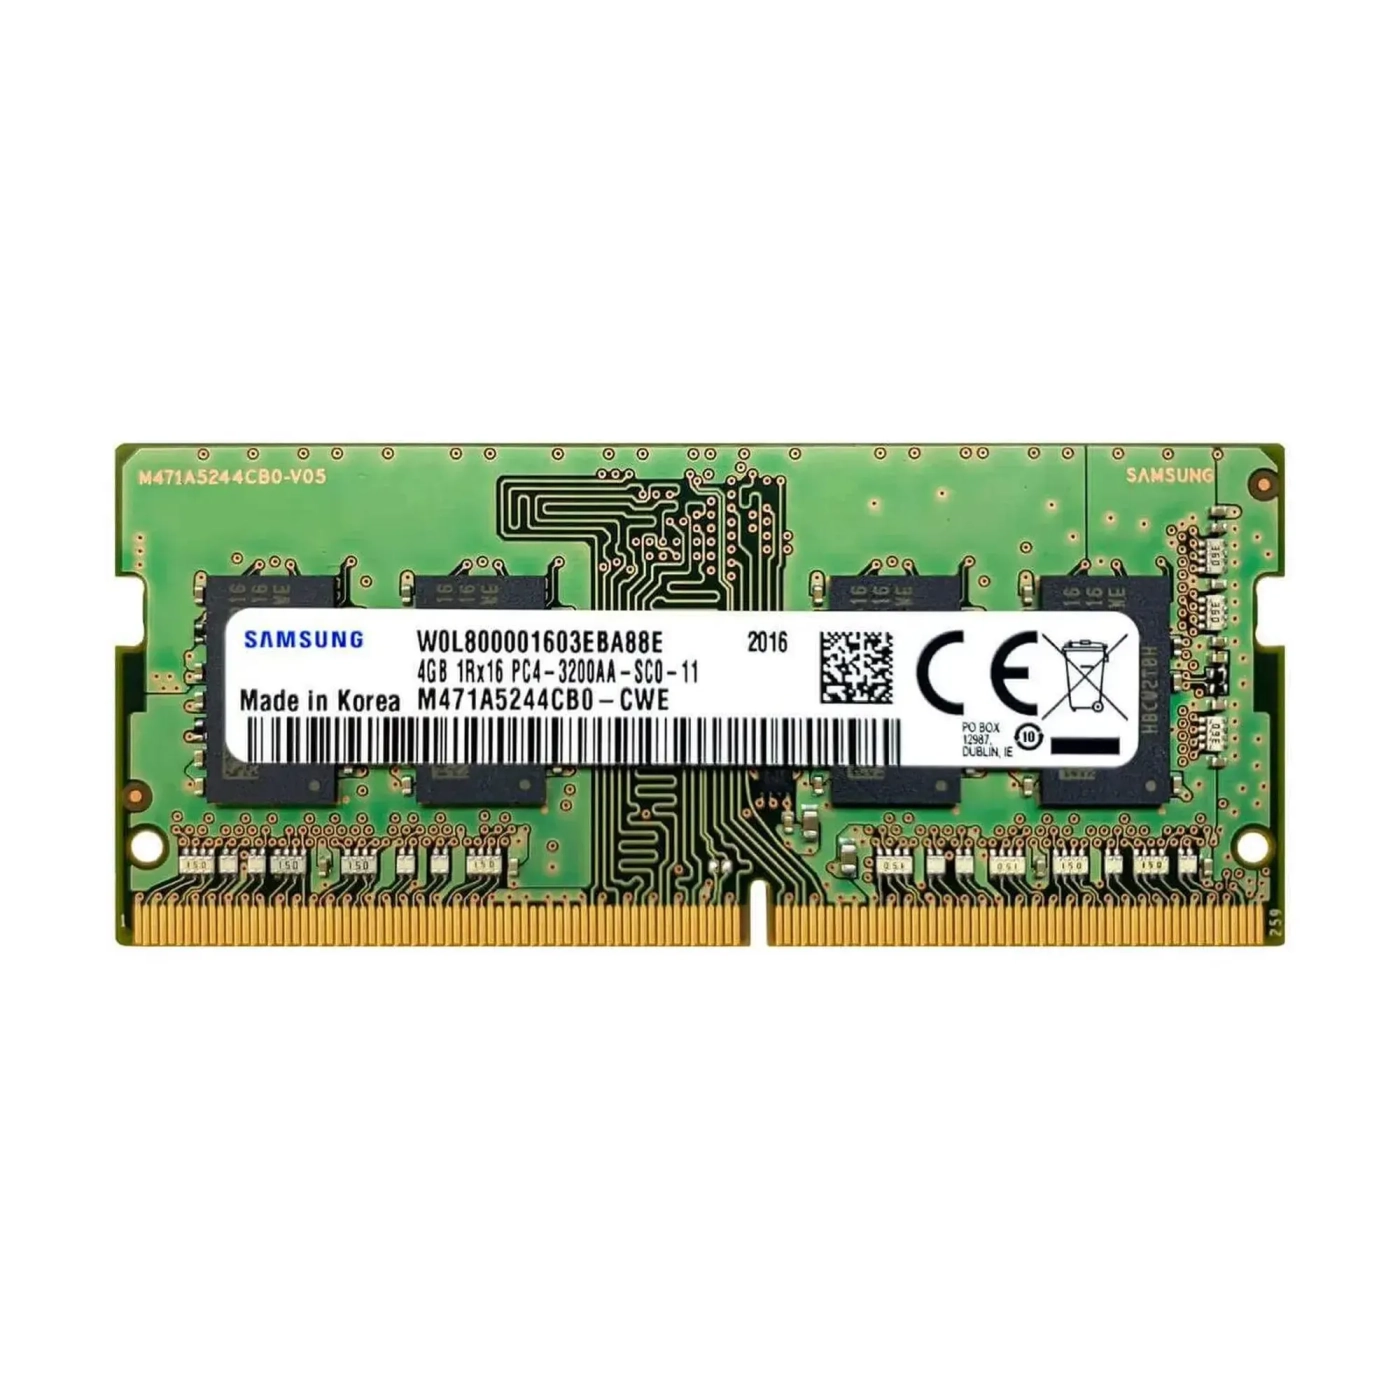 Купить Модуль памяти Samsung DDR4-3200 SODIMM 4GB (M471A5244CB0-CWE) - фото 1